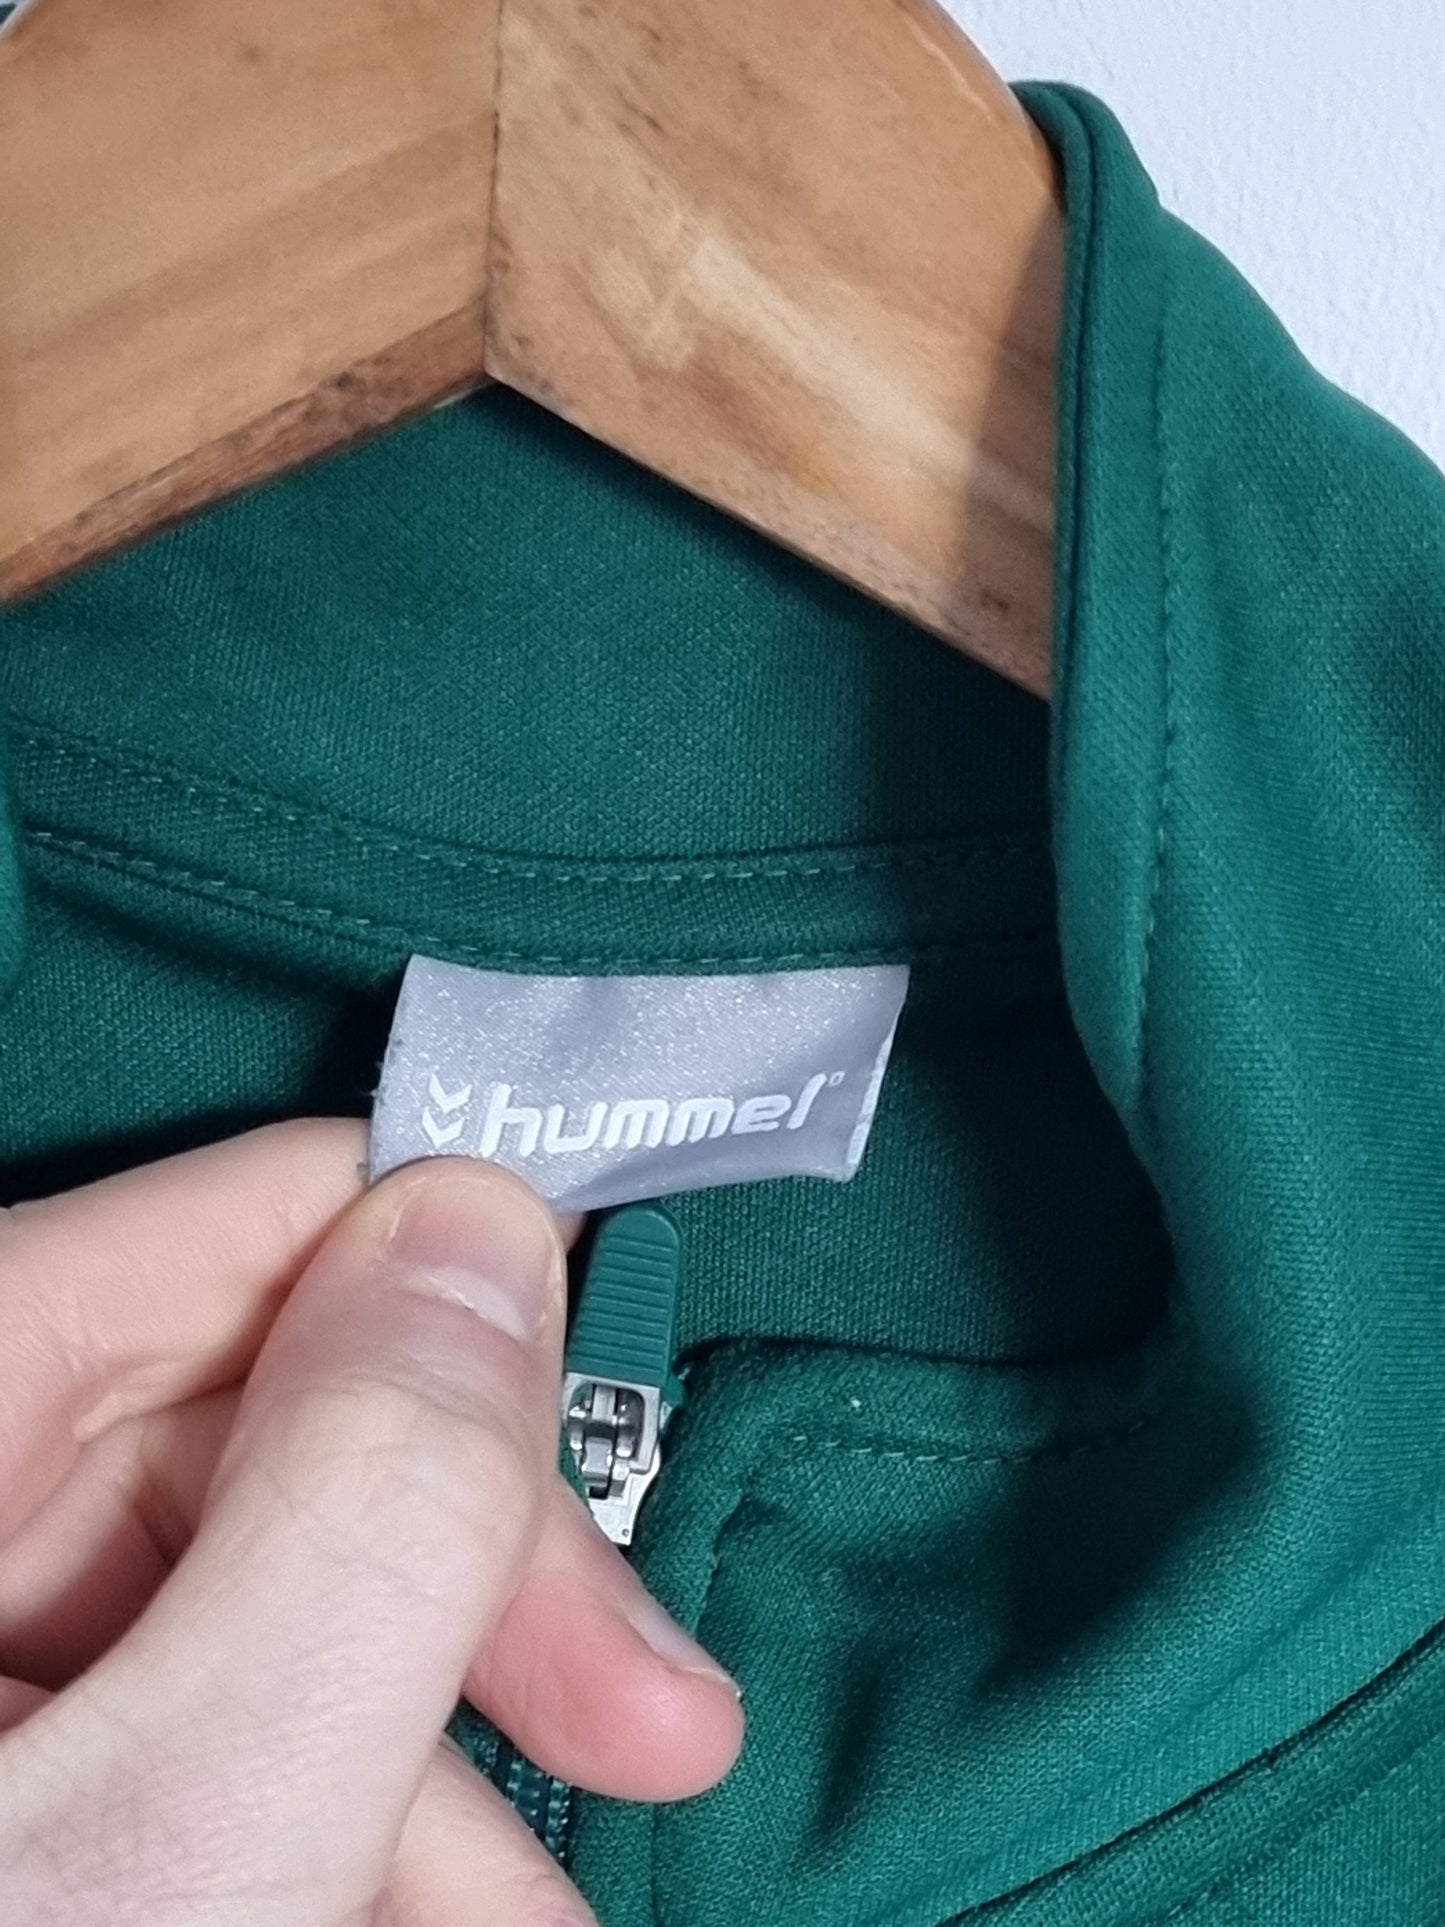 Hummel Greuther Furth 14/15 Track Jacket Large